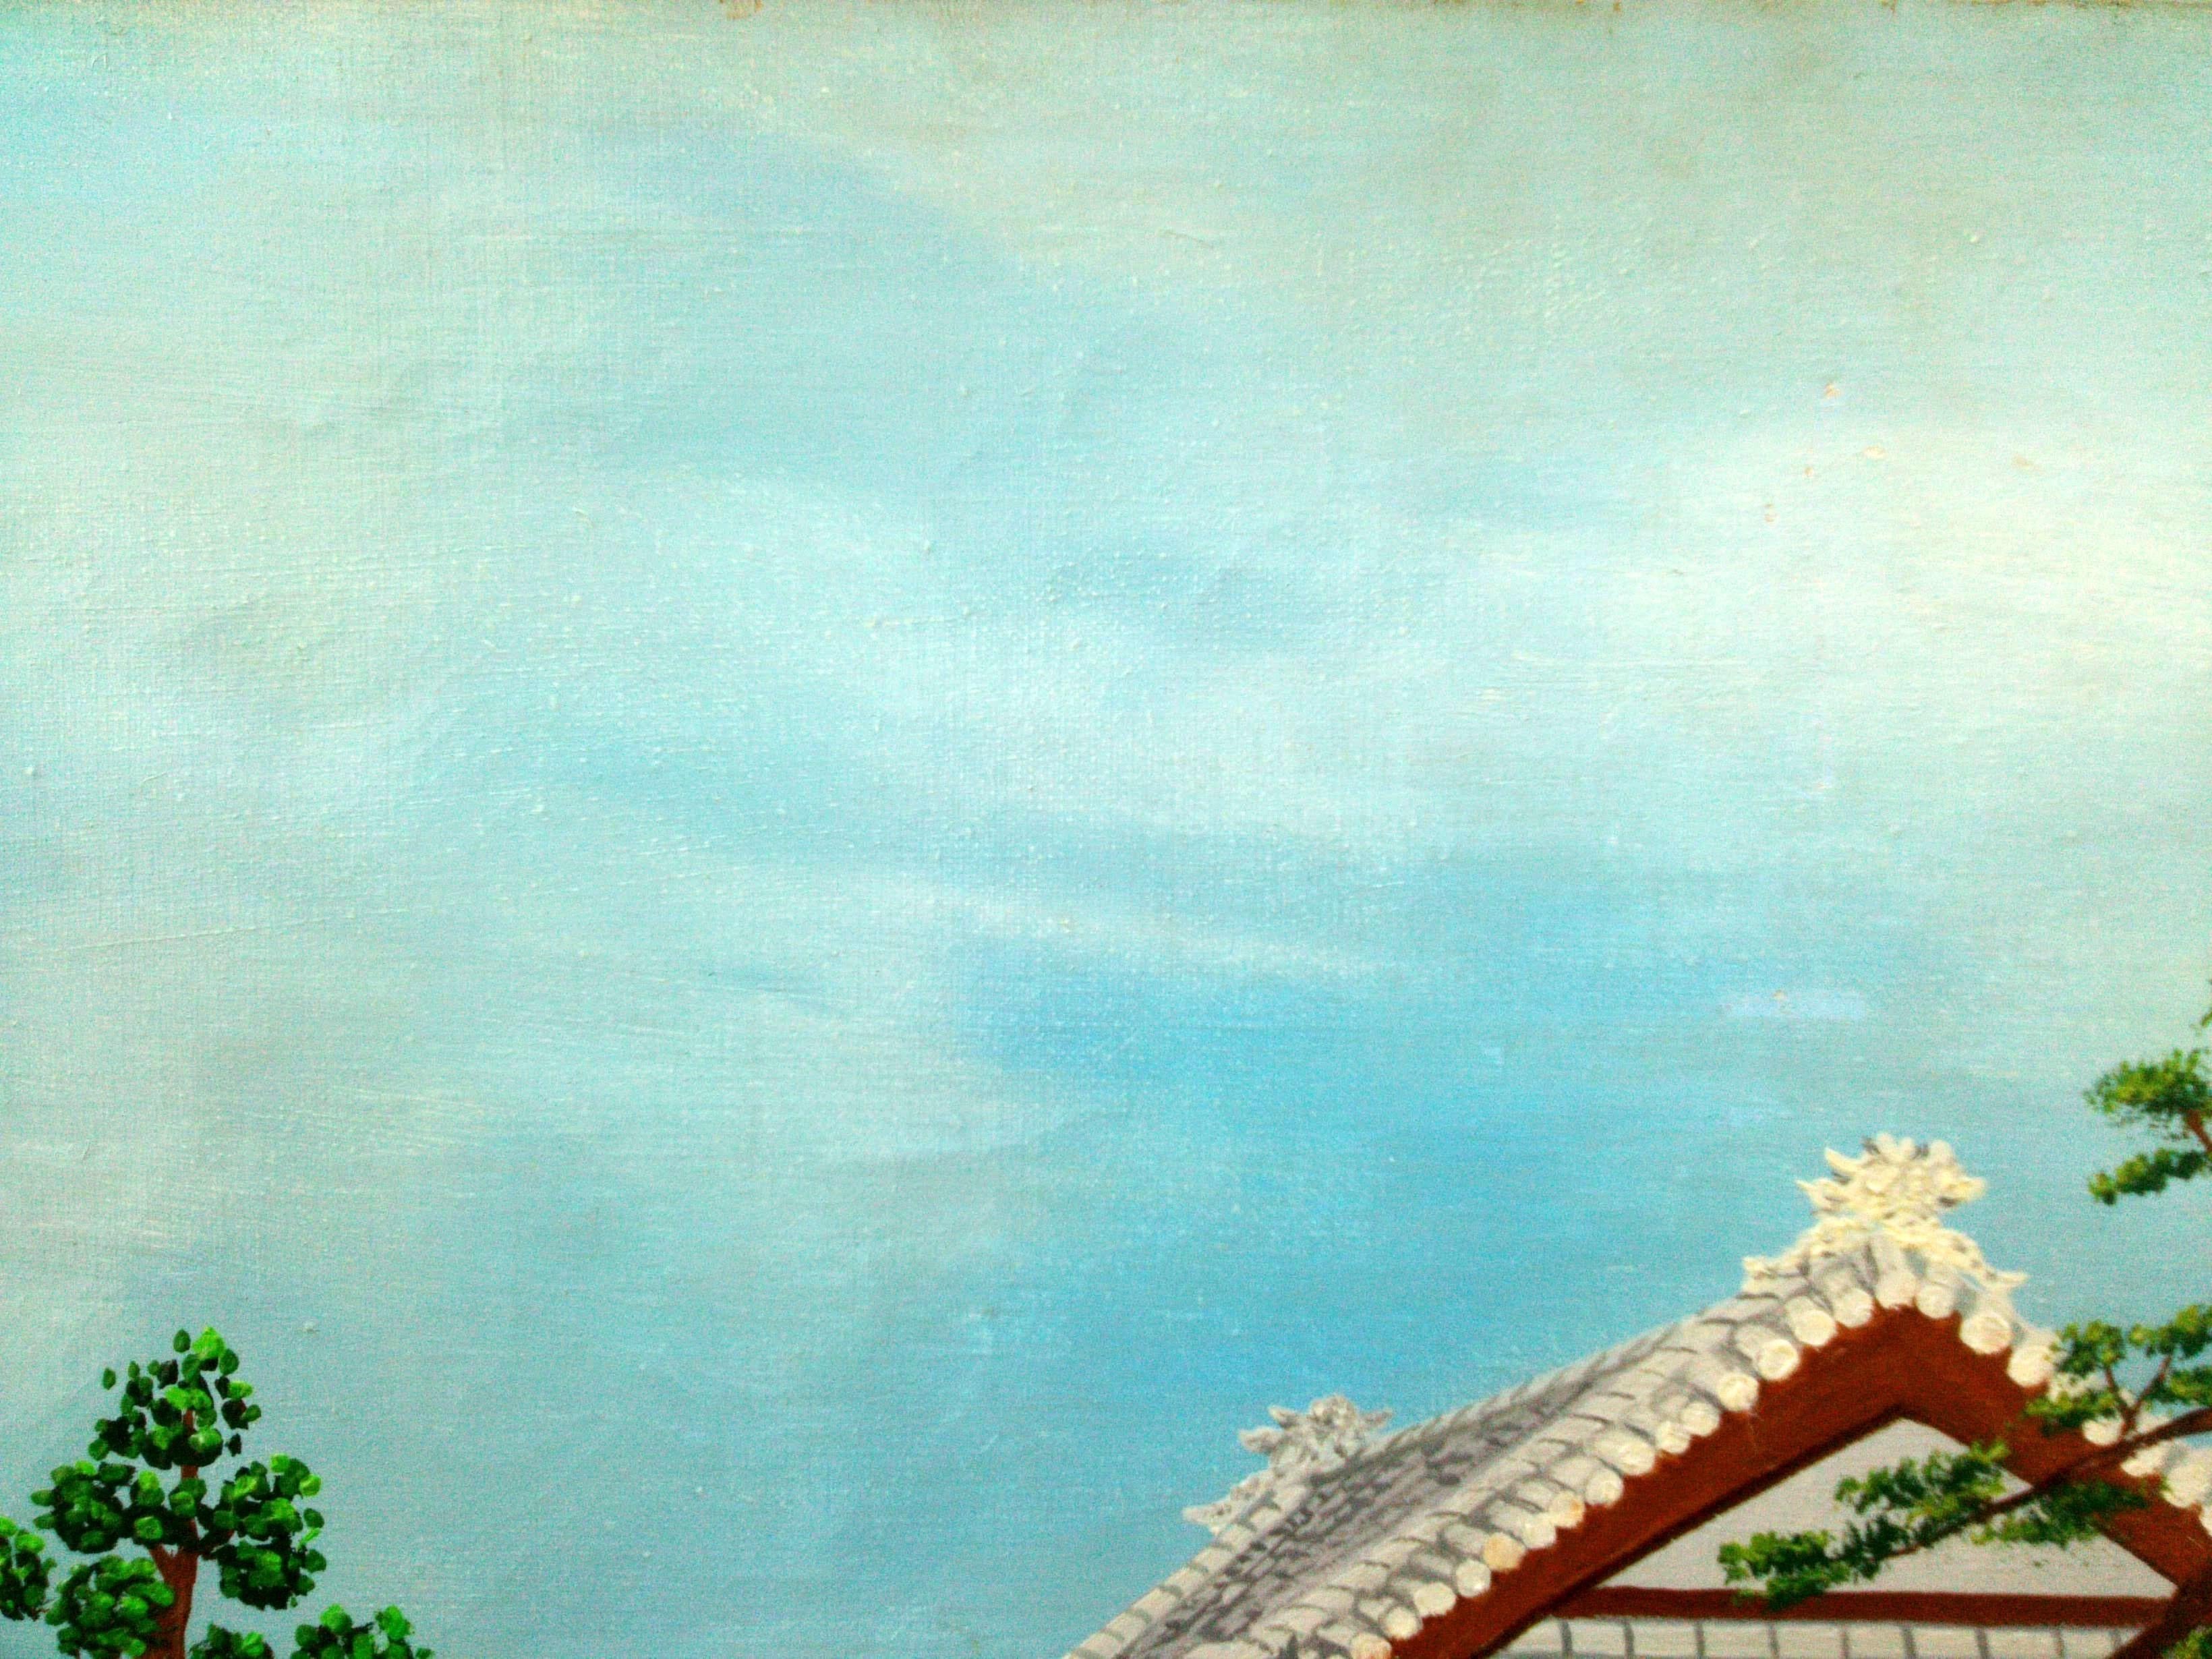 Une peinture parfaite pour les amoureux du Japon et ceux de l'art extérieur primitif/naïf. 
Il s'agit de l'œuvre d'un artiste extraordinaire, reconnu internationalement, qui a eu une vie extraordinaire.

Maurice LOIRAND (1922-2008) est né dans une